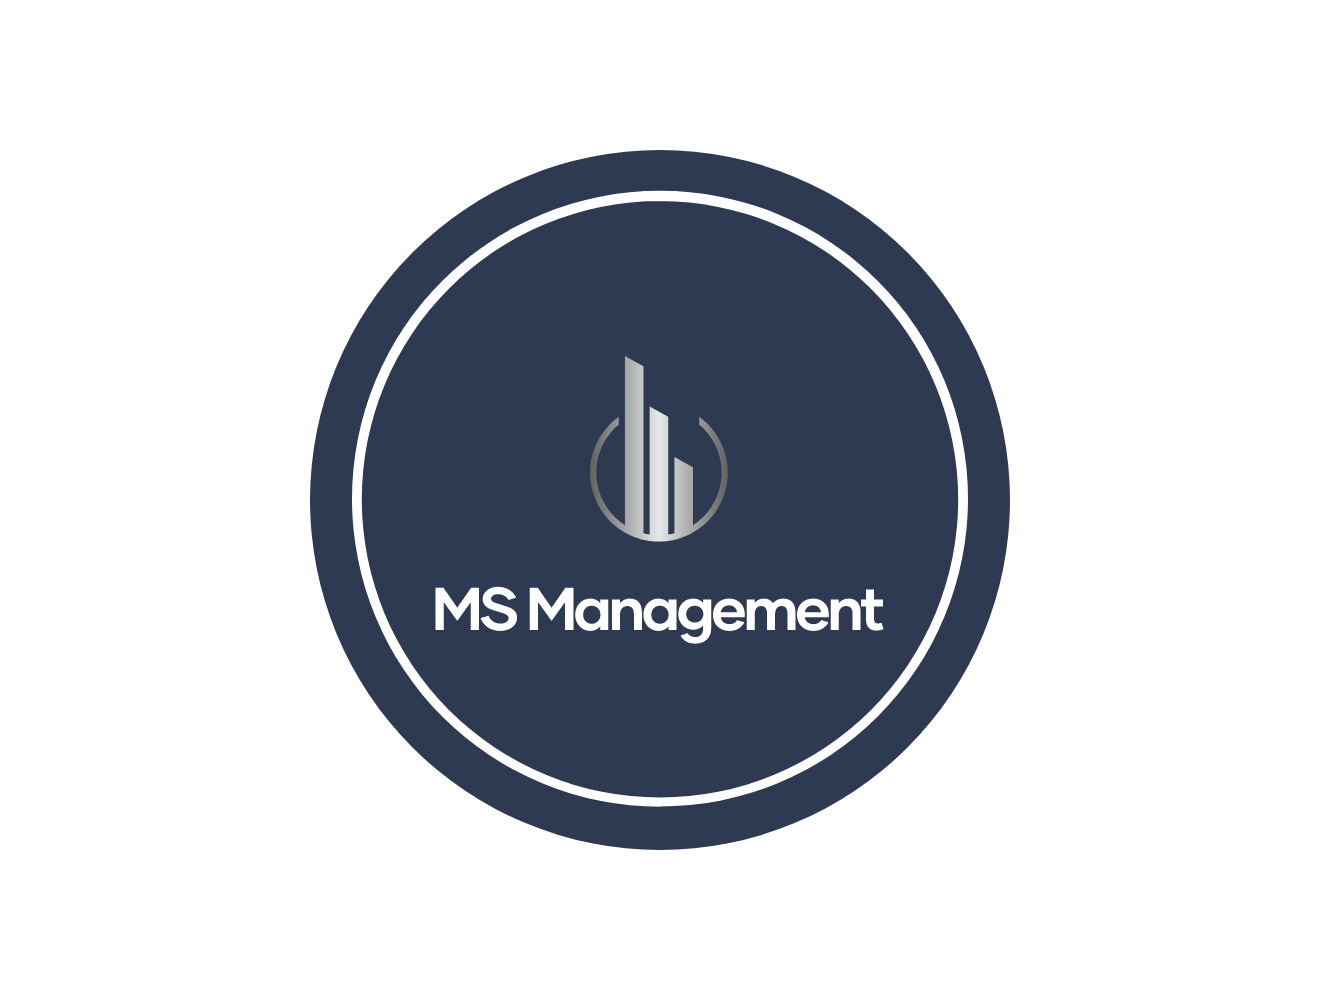 MS Management